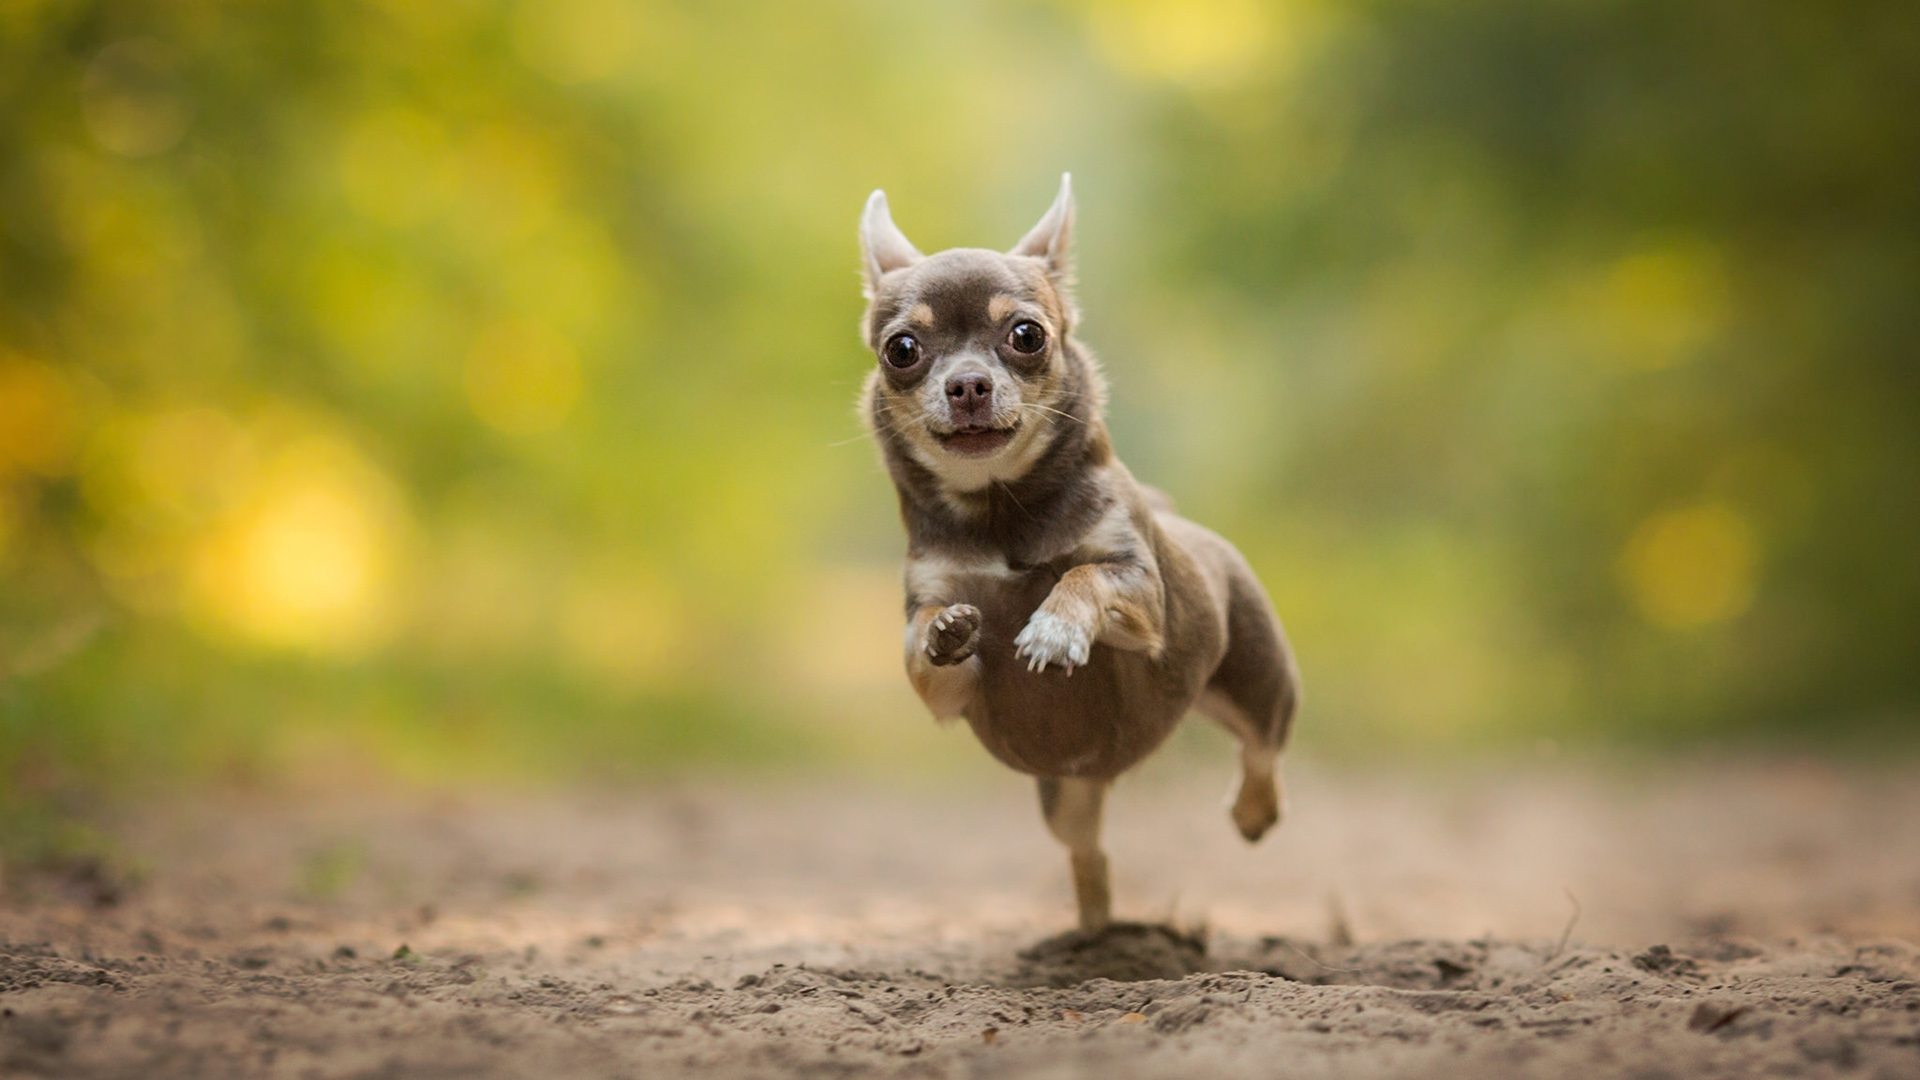 小狗 奔跑 可爱的眼神 可爱动物壁纸 动物壁纸 壁纸下载 彼岸桌面